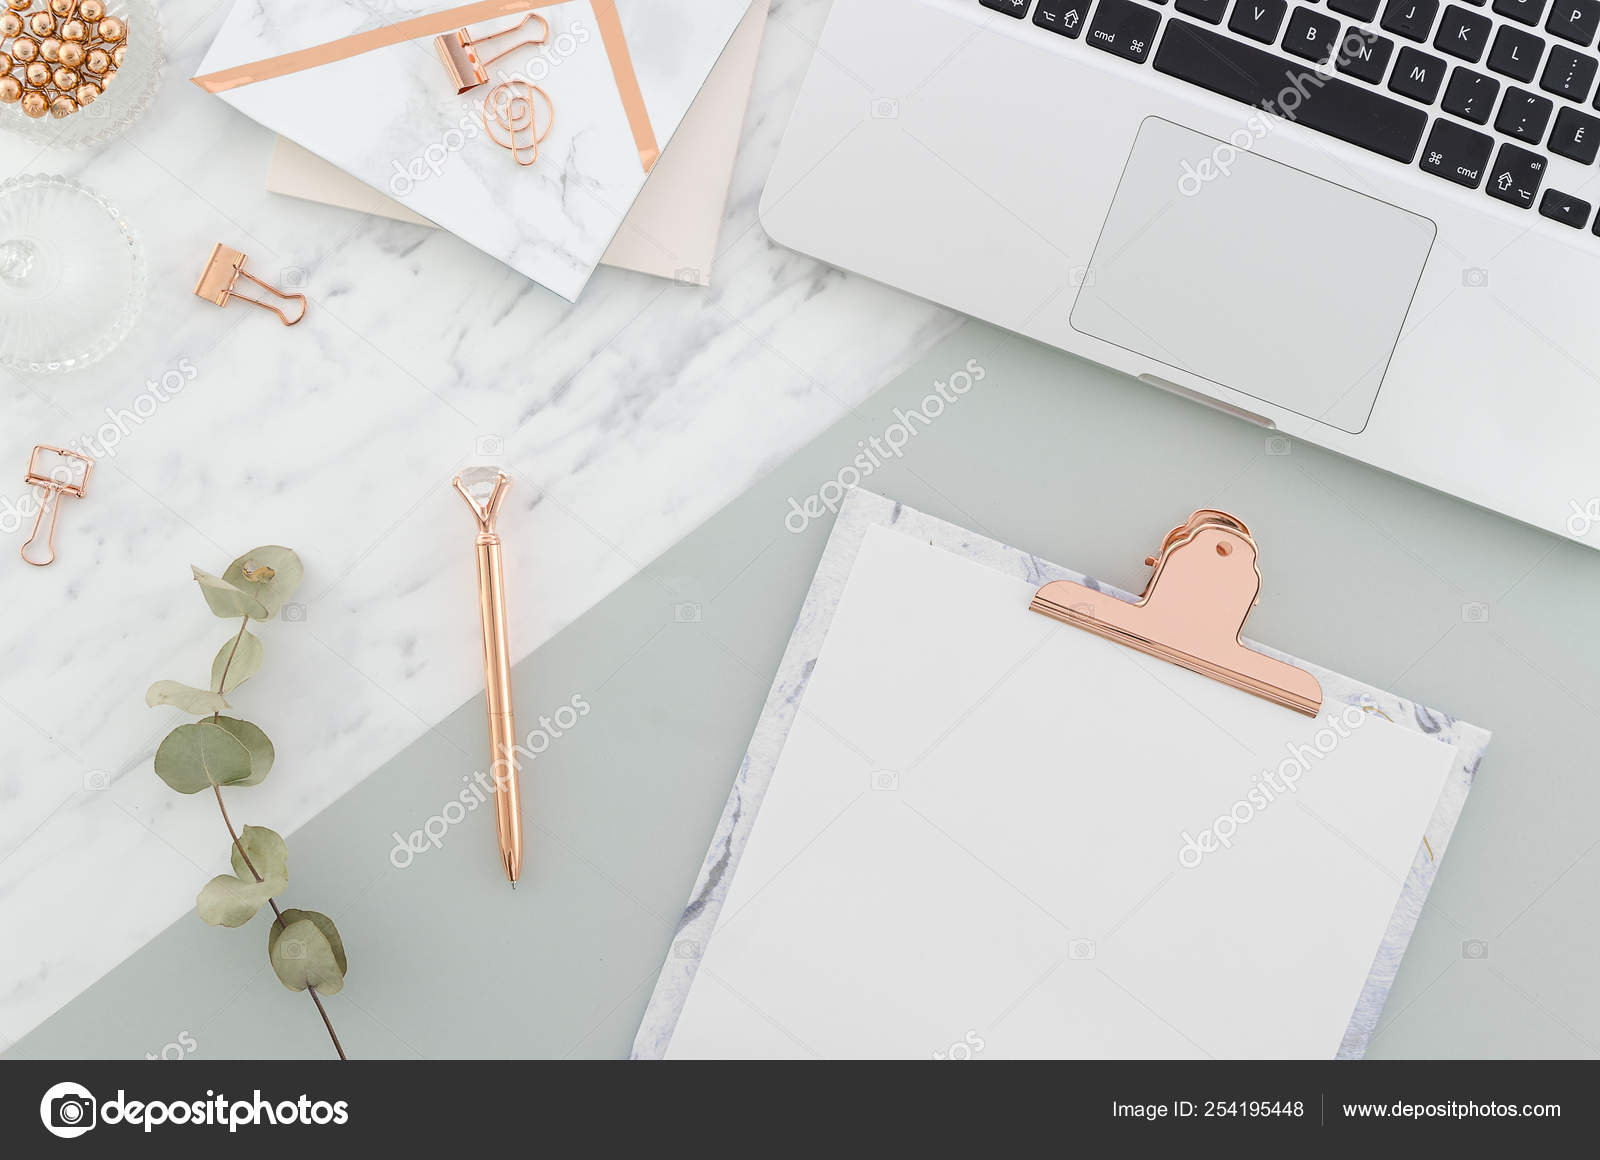 Bàn làm việc với laptop, kẹp giấy, bút vàng hồng và kẹp giấy là bức tranh tuyệt đẹp của một văn phòng hiện đại và tiện nghi. Với sự kết hợp giữa màu hồng vàng tinh tế cùng các thiết bị làm việc chuyên nghiệp, bàn làm việc này sẽ giúp bạn làm việc hiệu quả hơn và tạo sự bắt mắt cho không gian làm việc của mình. 